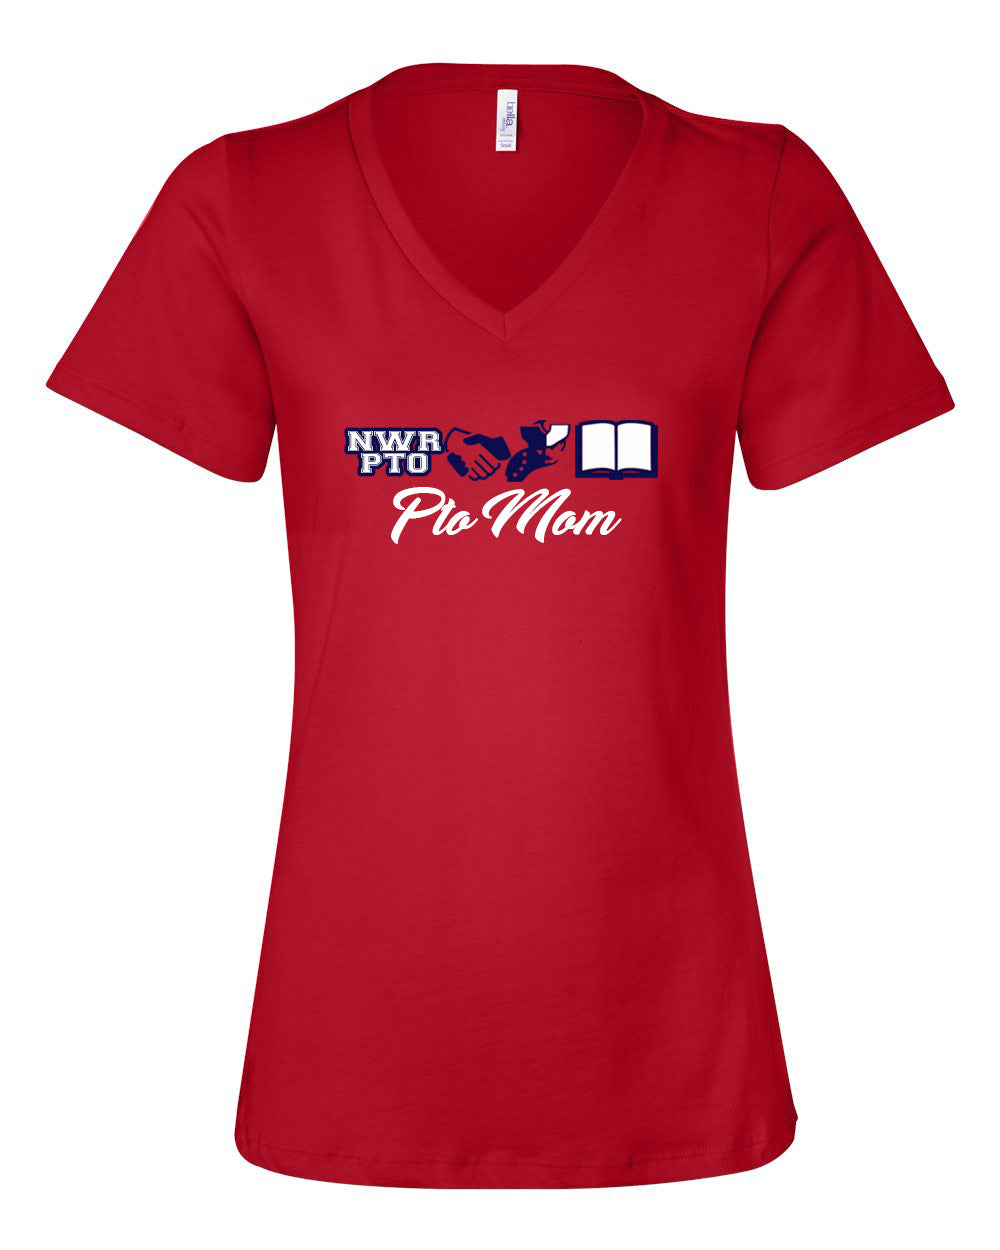 PTO mom V-neck T-shirt